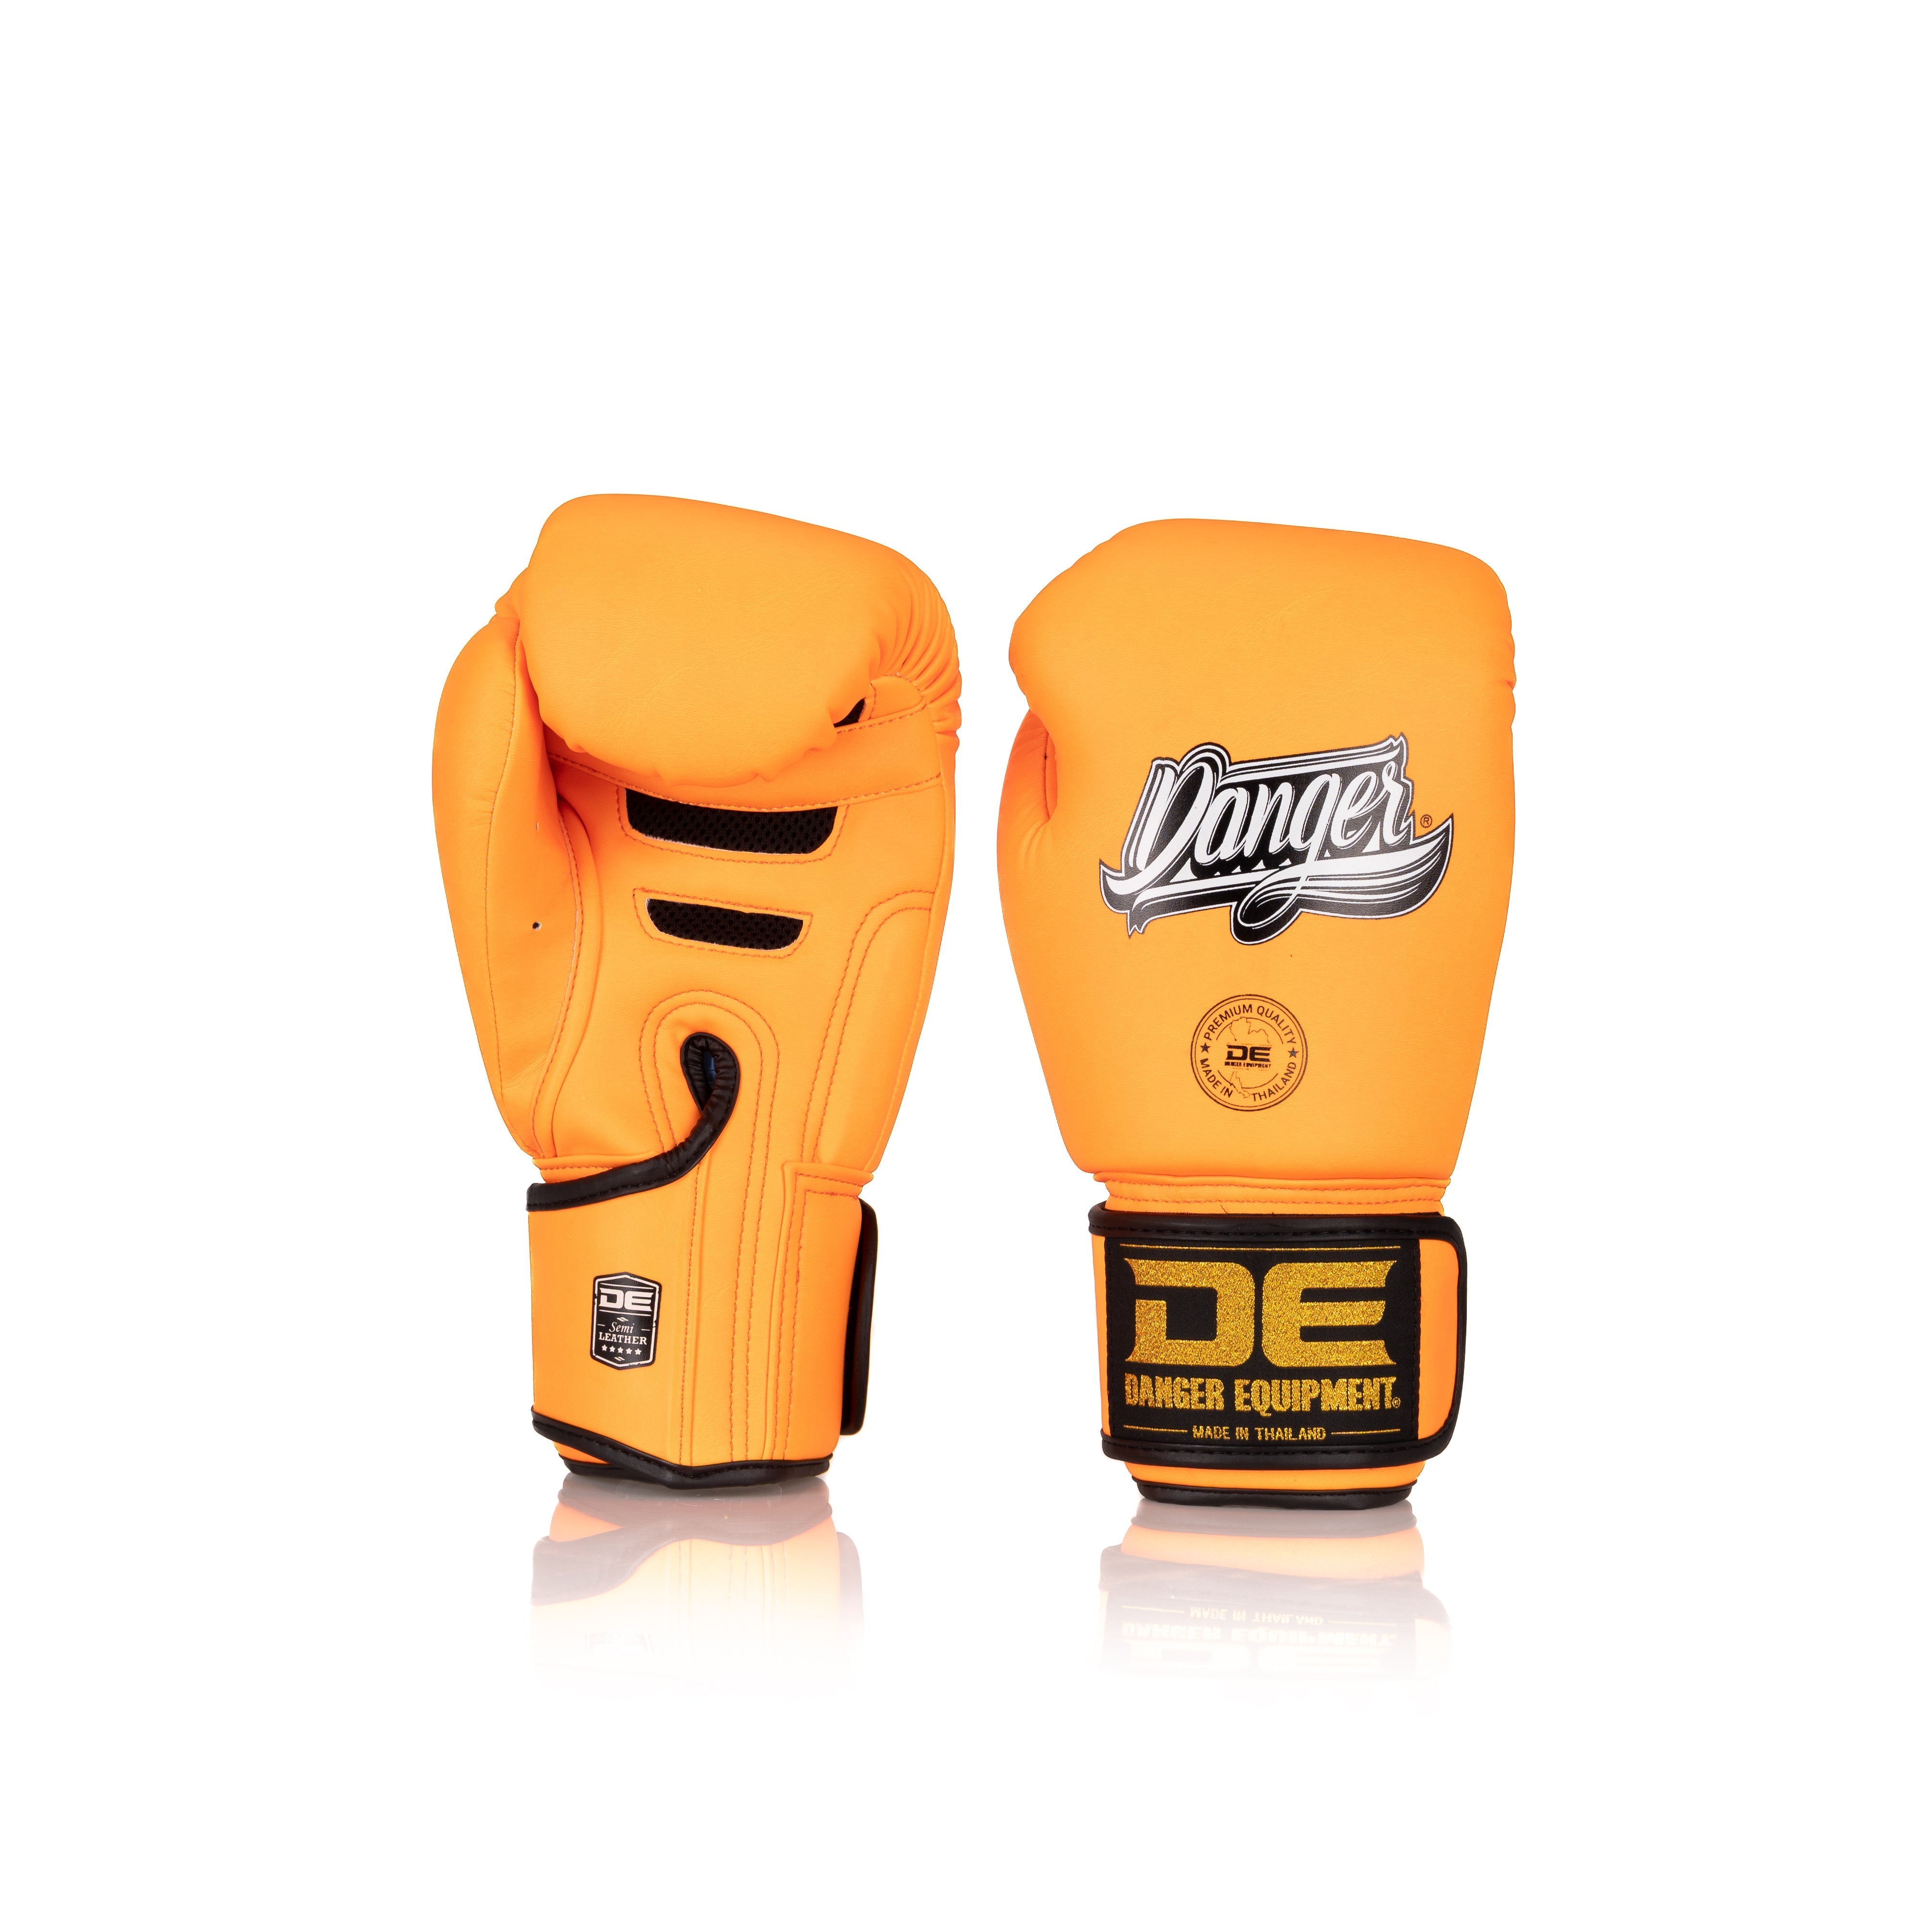 Orange Danger Equipment Super Max Boxing Gloves Front/Back